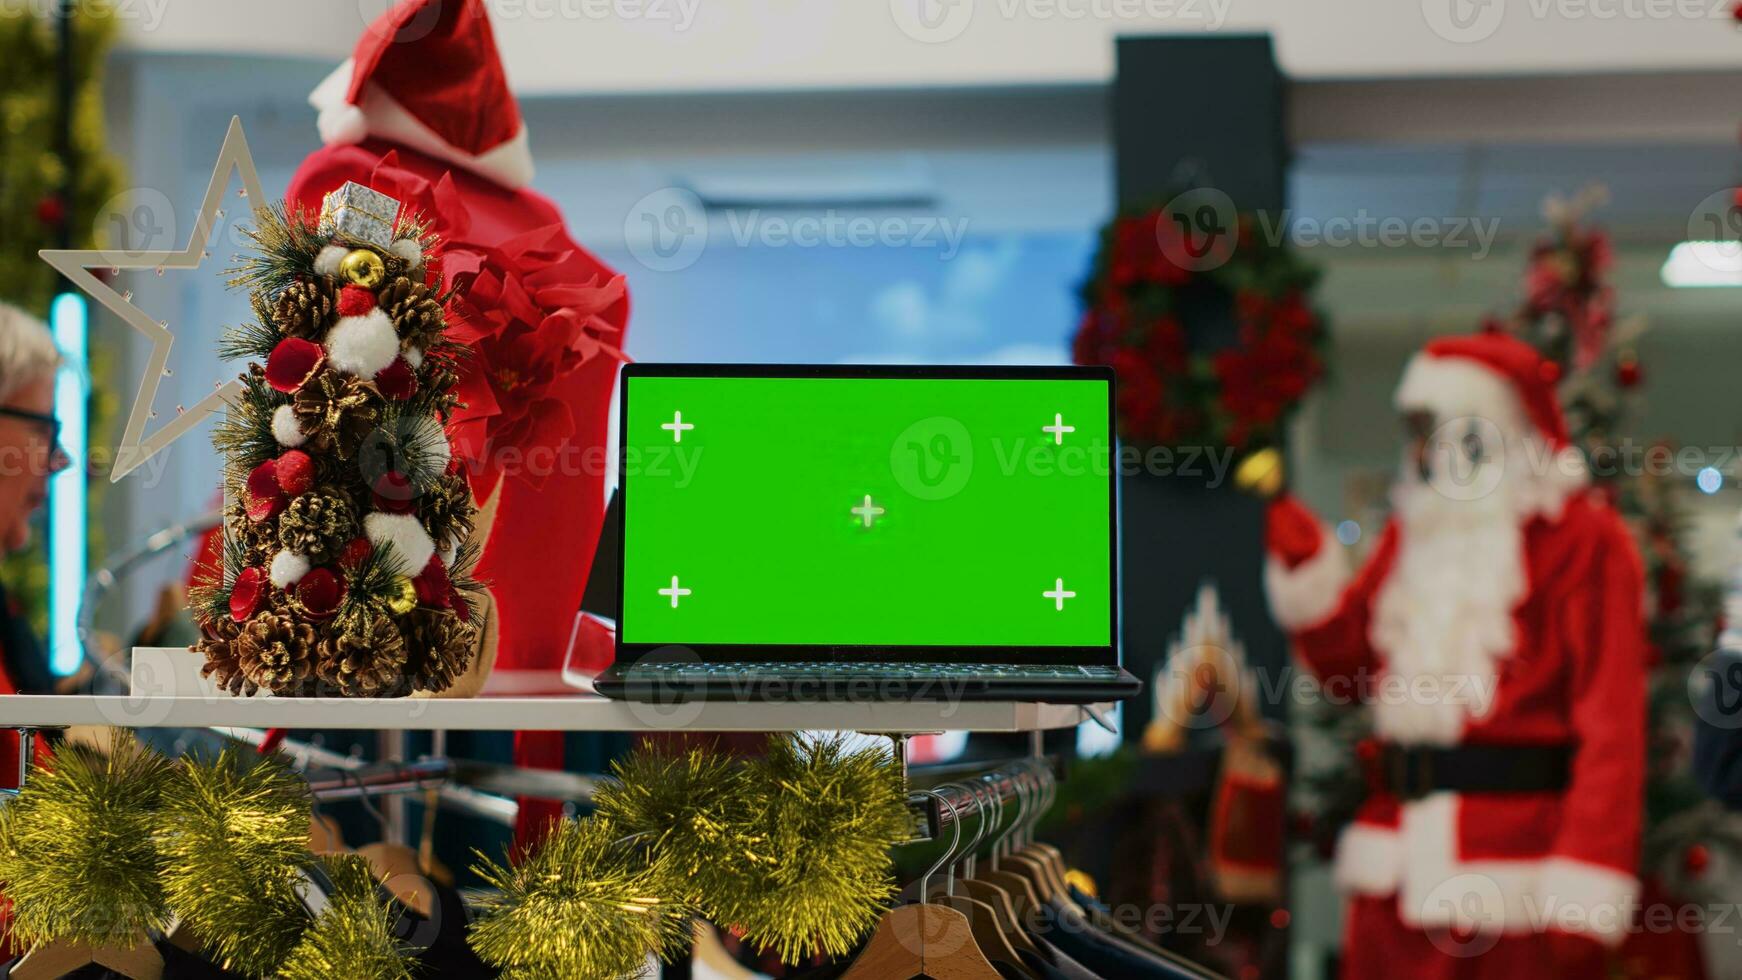 Attrappe, Lehrmodell, Simulation Laptop auf Weihnachten dekoriert Kleidung Geschäft Anzeige Tabelle zeigen Information Über Produkte. Grün Bildschirm Gerät im Einkaufen Einkaufszentrum Mode Geschäft nützlich zum suchen oben Kleider Preise foto